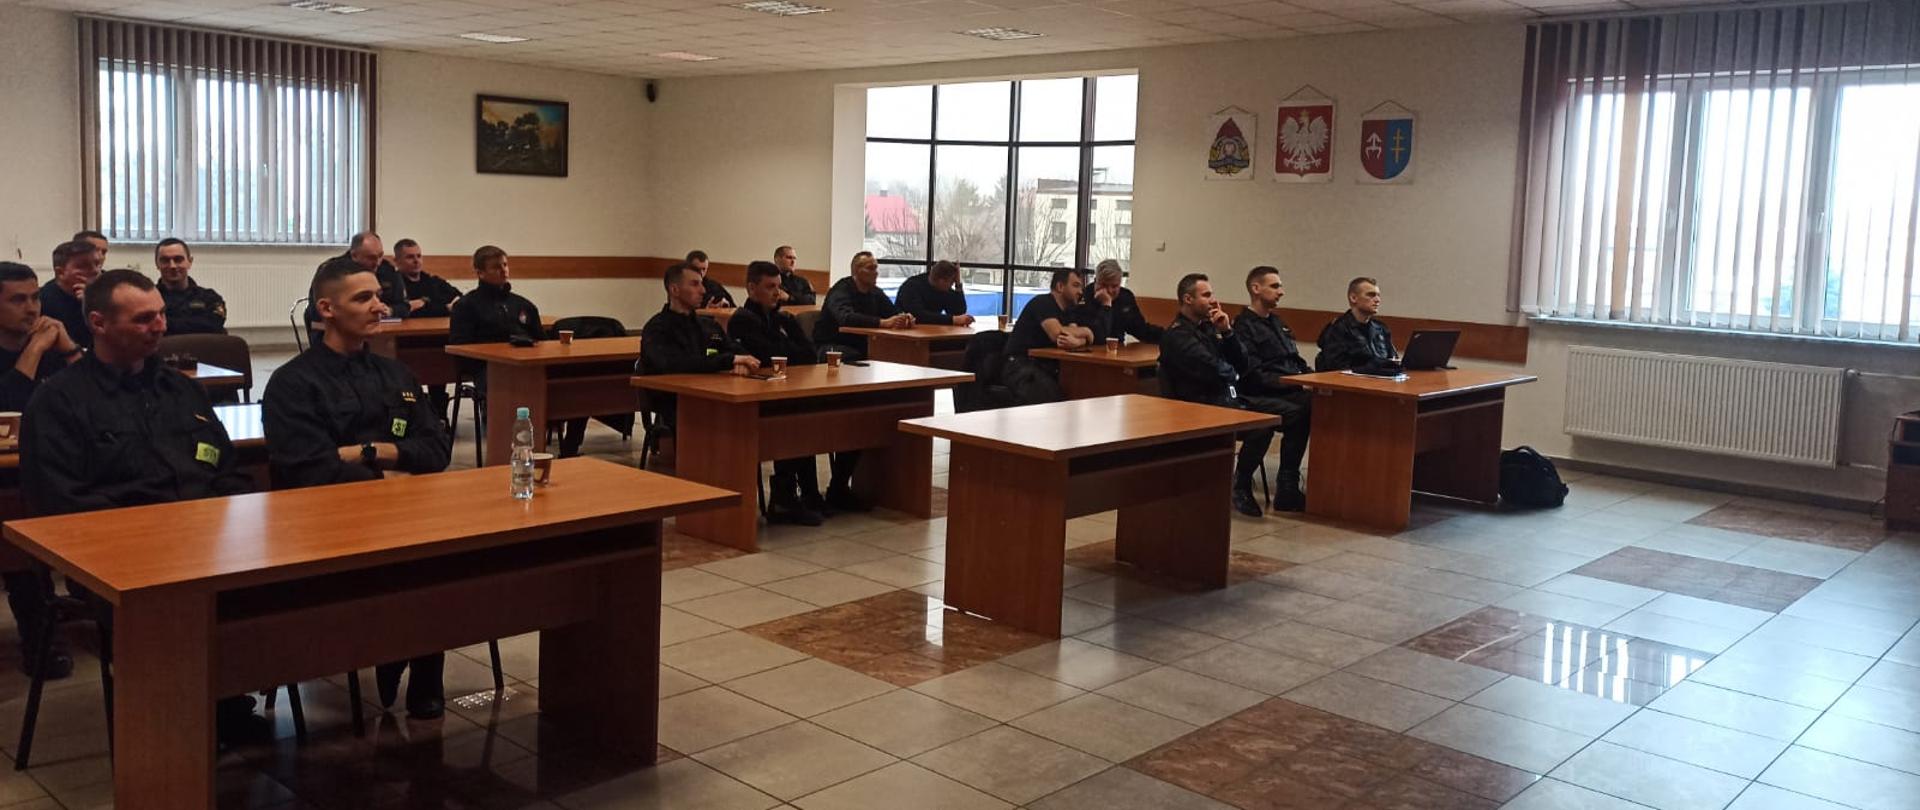 Na zdjęciu widzimy grupę strażaków podczas zajęć lekcyjnych w sali wewnątrz budynku. Mężczyźni siedzą w ławkach. Na ścianie pomiędzy oknami logo PSP, godło polski oraz znak powiatu skarżyskiego.